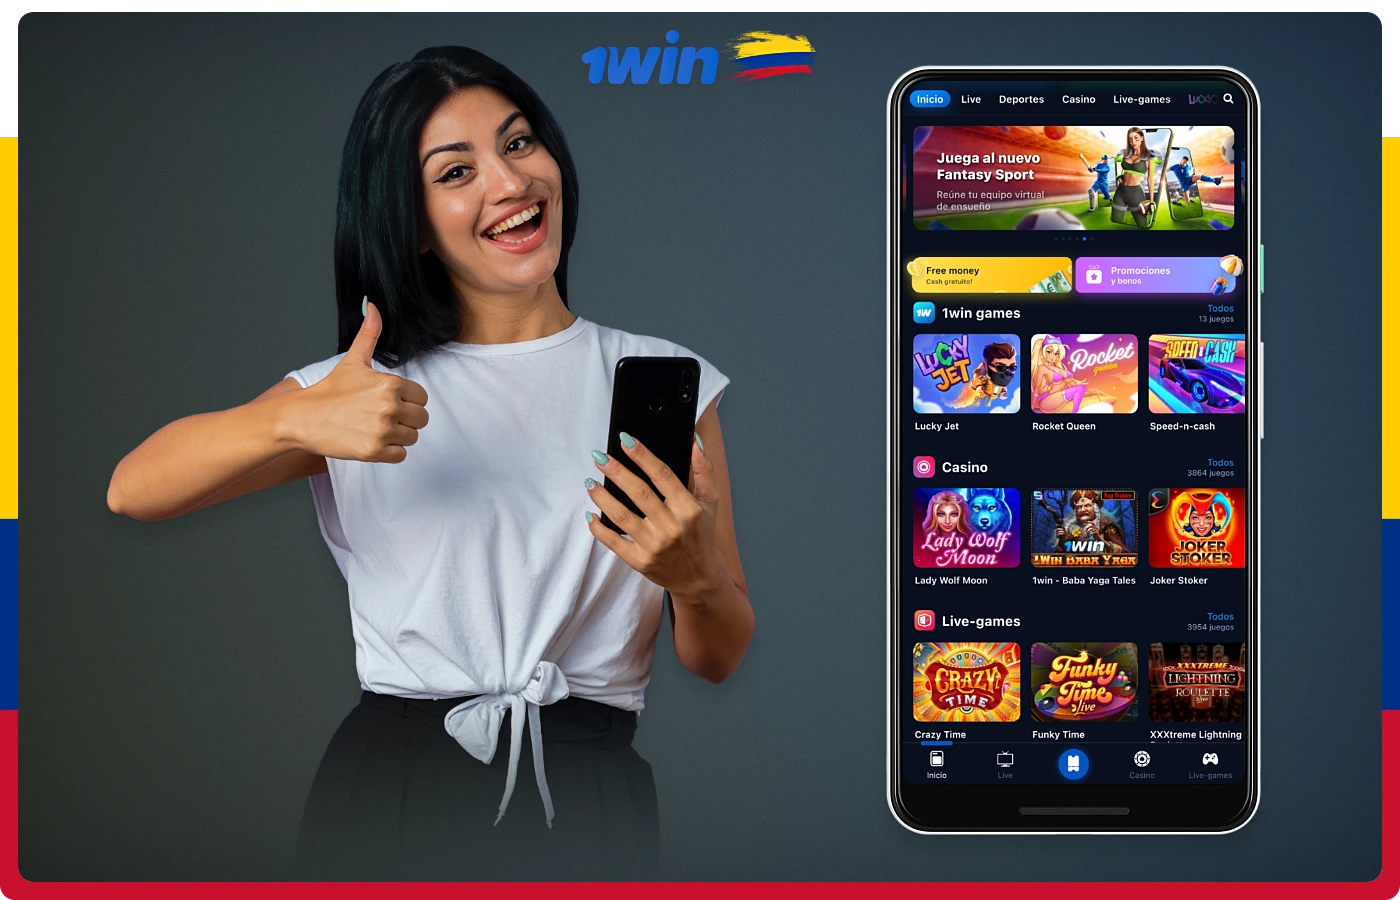 La aplicación móvil de 1win ofrece una serie de ventajas, como la posibilidad de apostar sobre la marcha